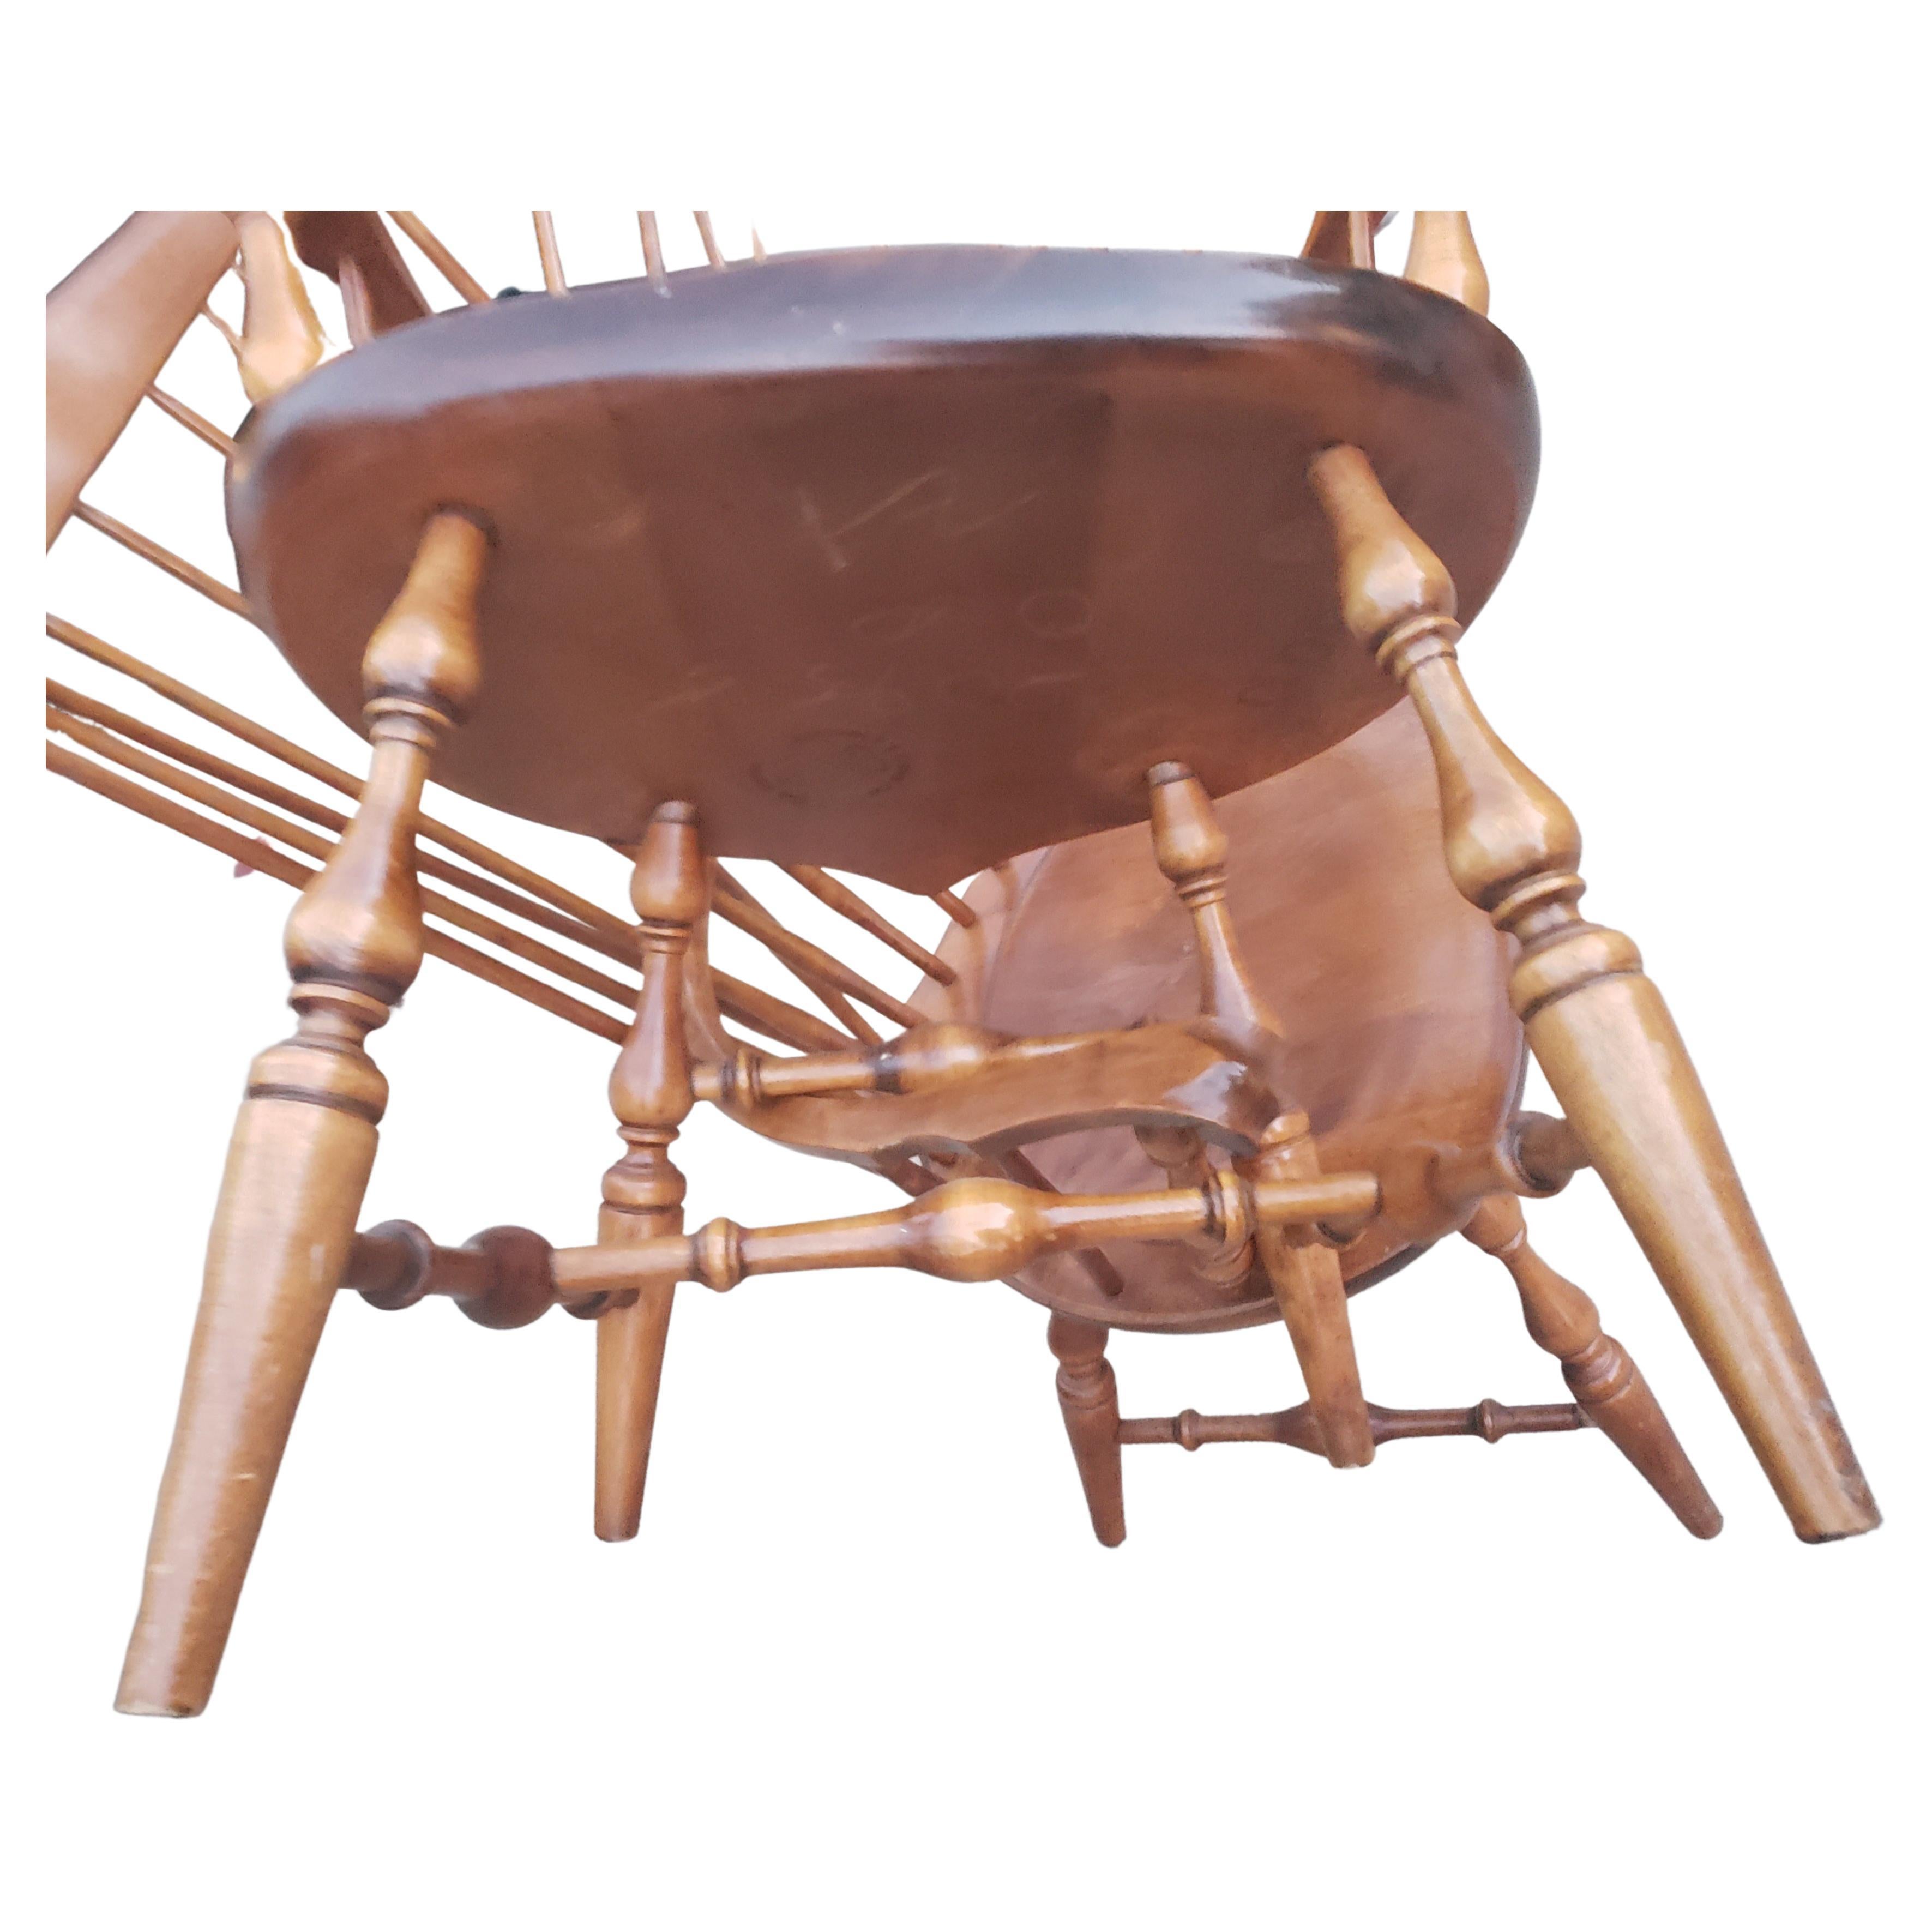 Chaises windsor Nichols & Stone en pin ancien et érable, Circa 1960s. Comprend des coussins de siège. Chaises et coussins en excellent état vintage.
Mesure 24,5